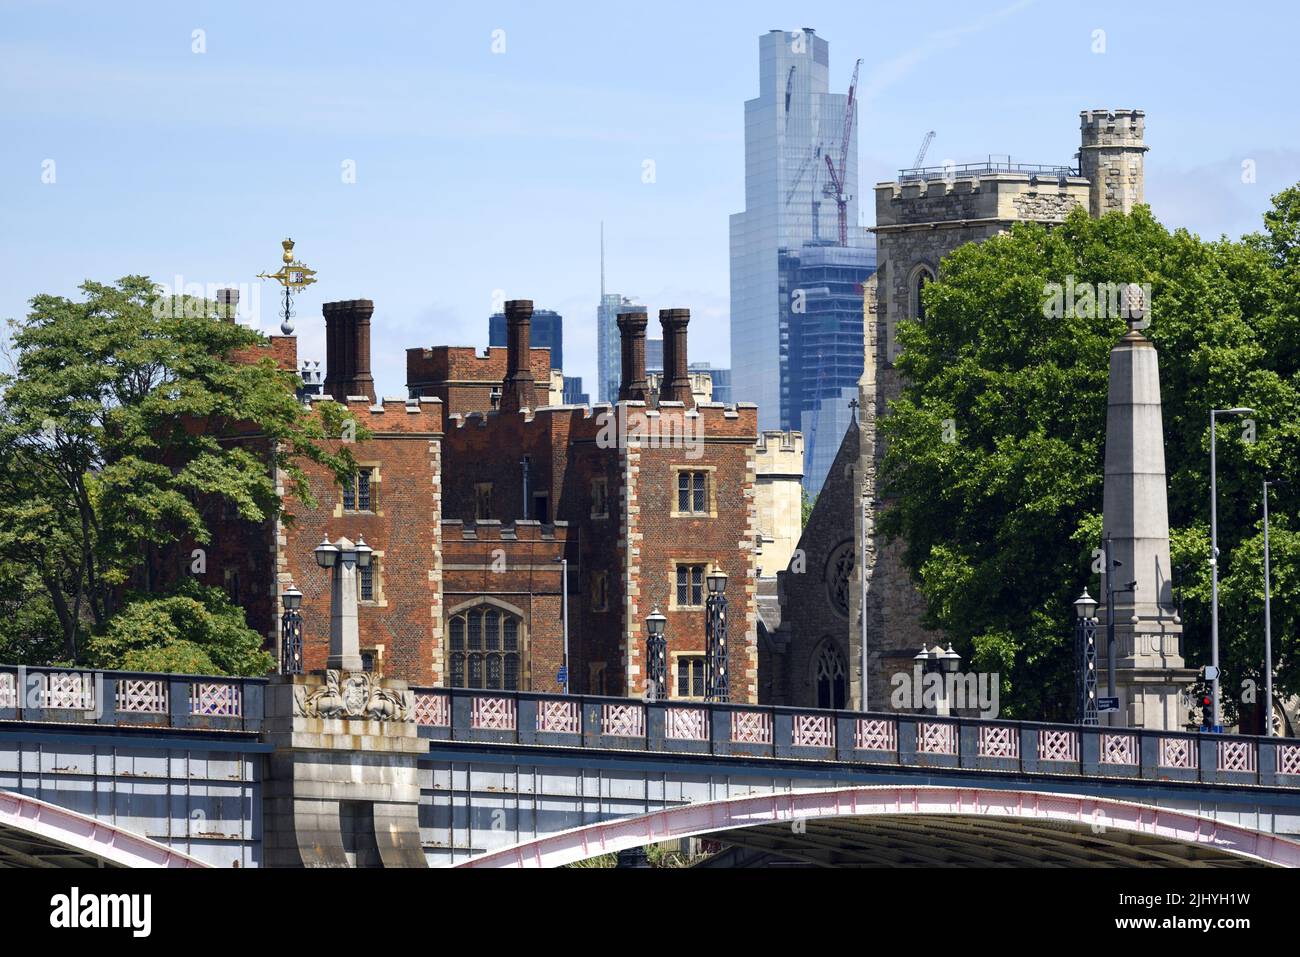 Londres, Angleterre, Royaume-Uni. Palais de Lambeth, pont de Lambeth et tour NatWest / Tour 42 vu de Millbank Banque D'Images